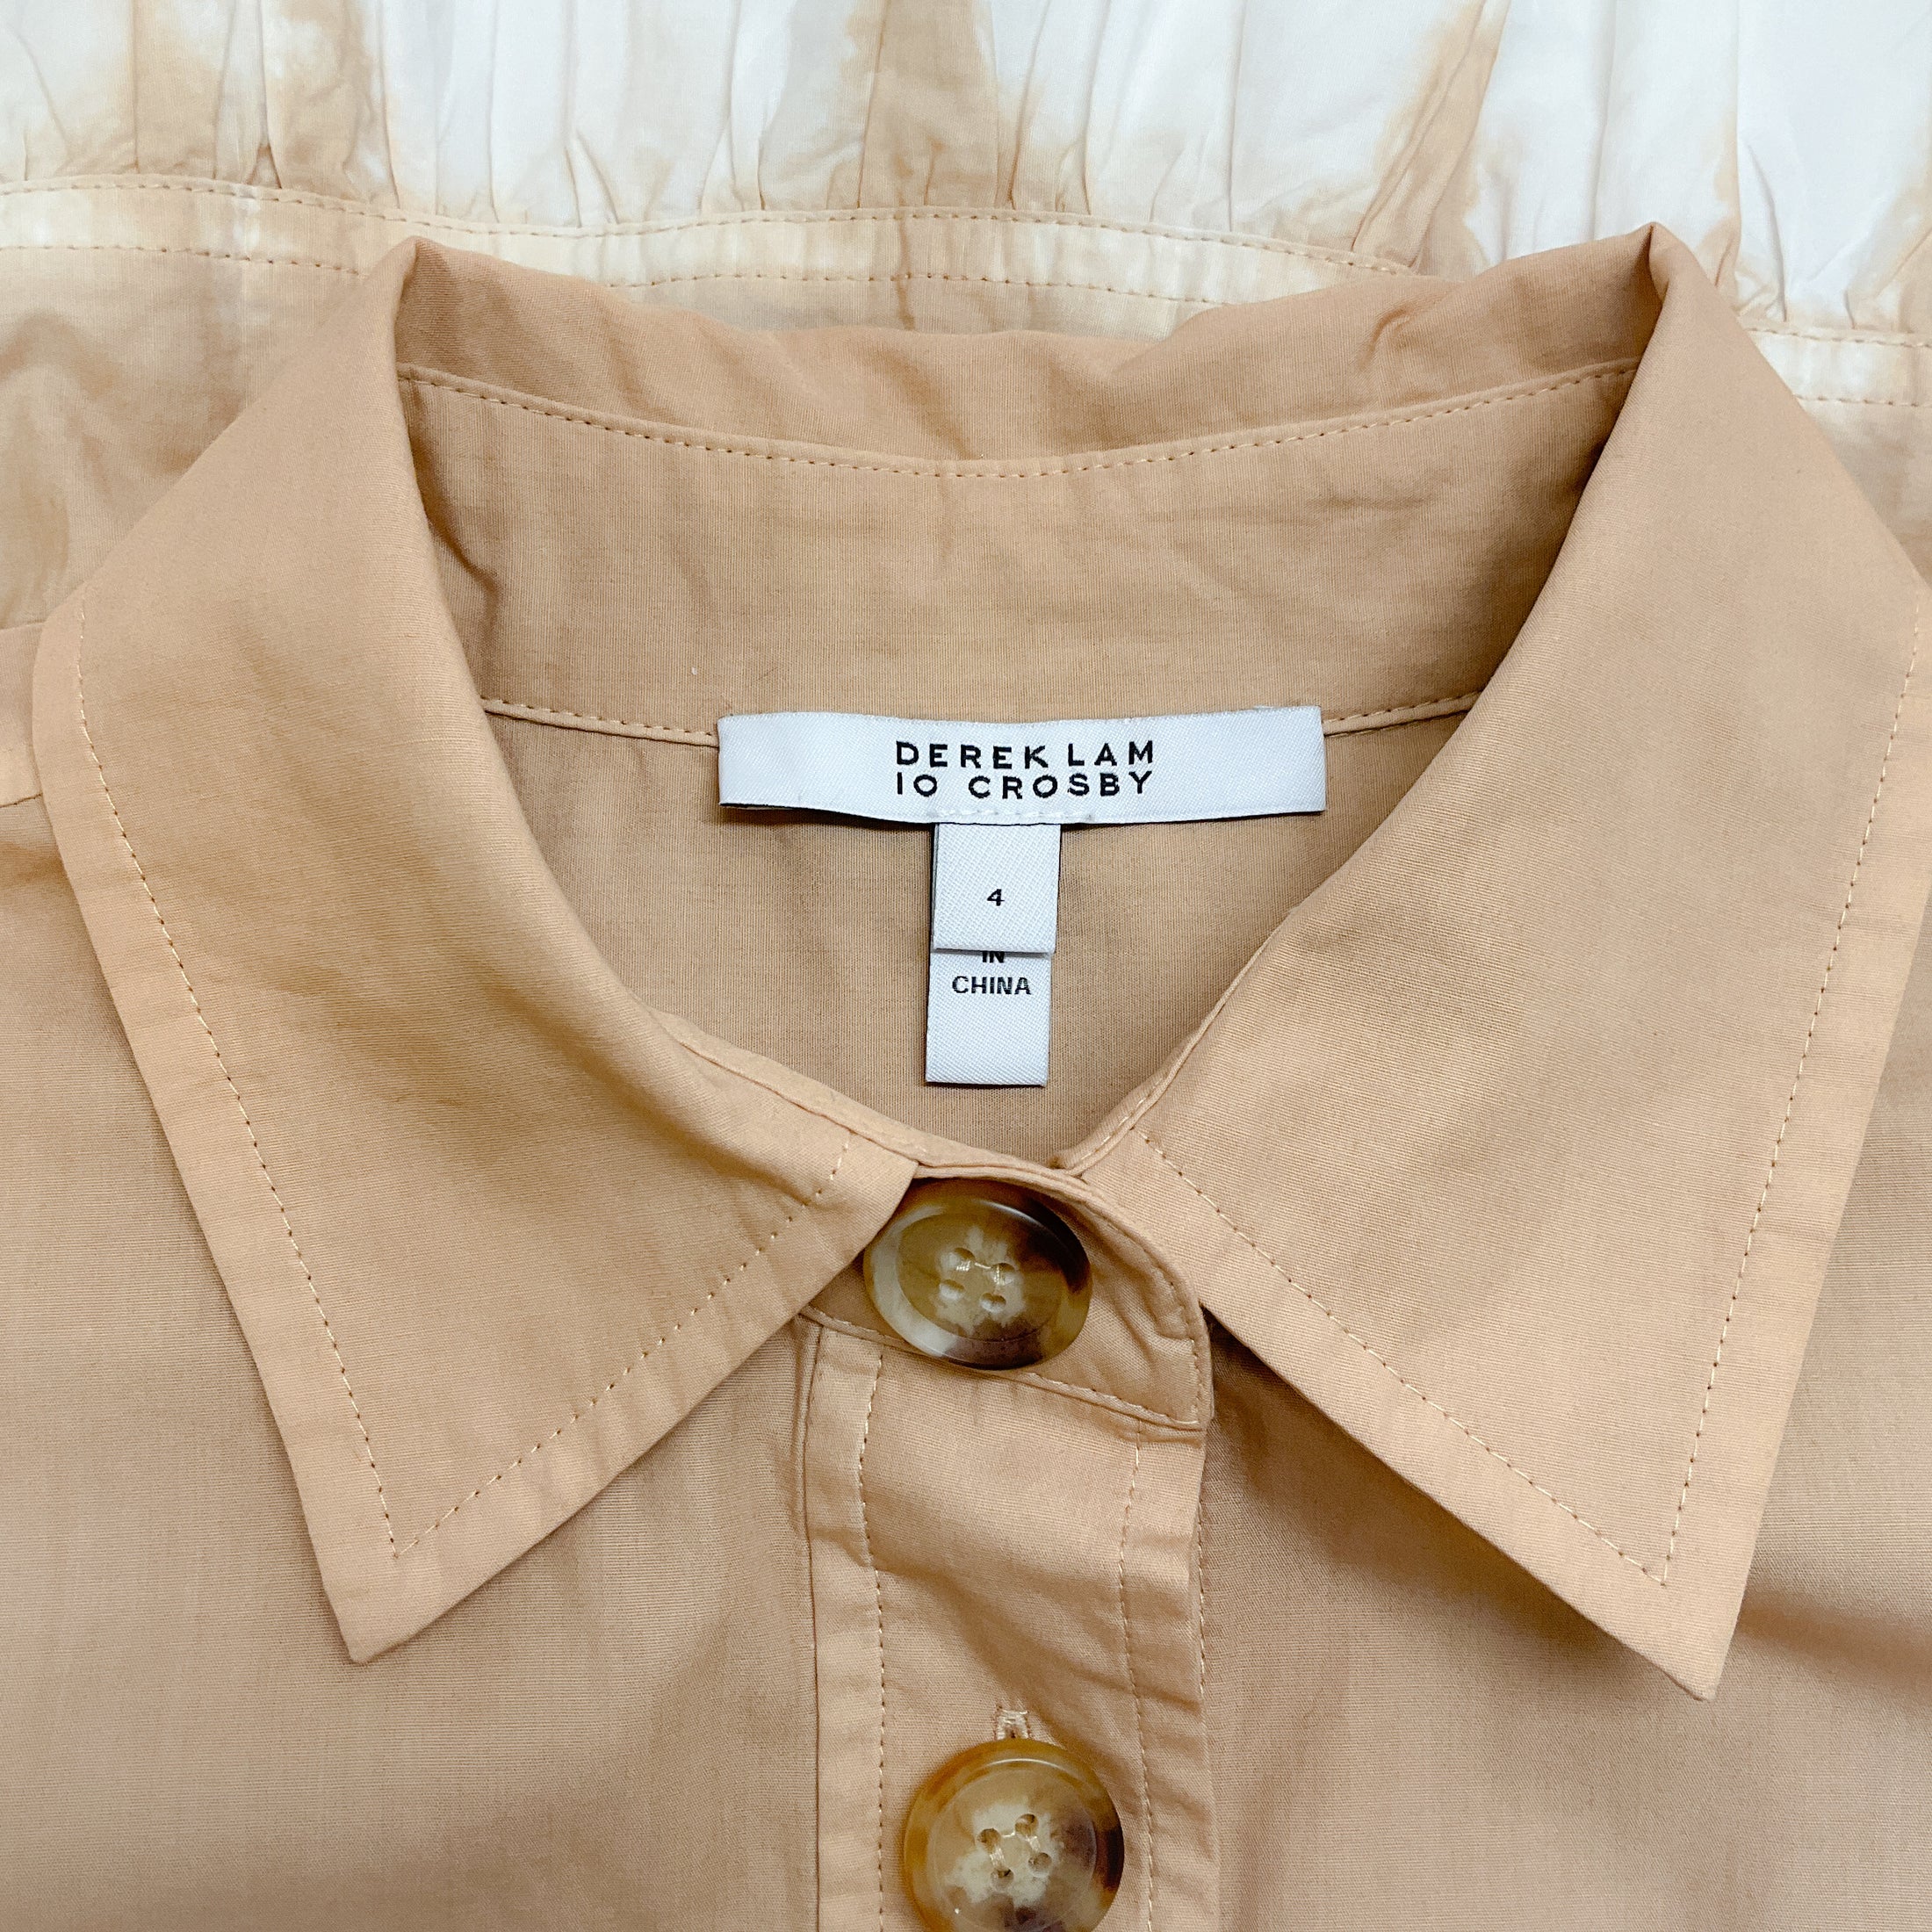 Derek Lam 10 Crosby Beige / Brown Belted Dip Dye Shirt Dress